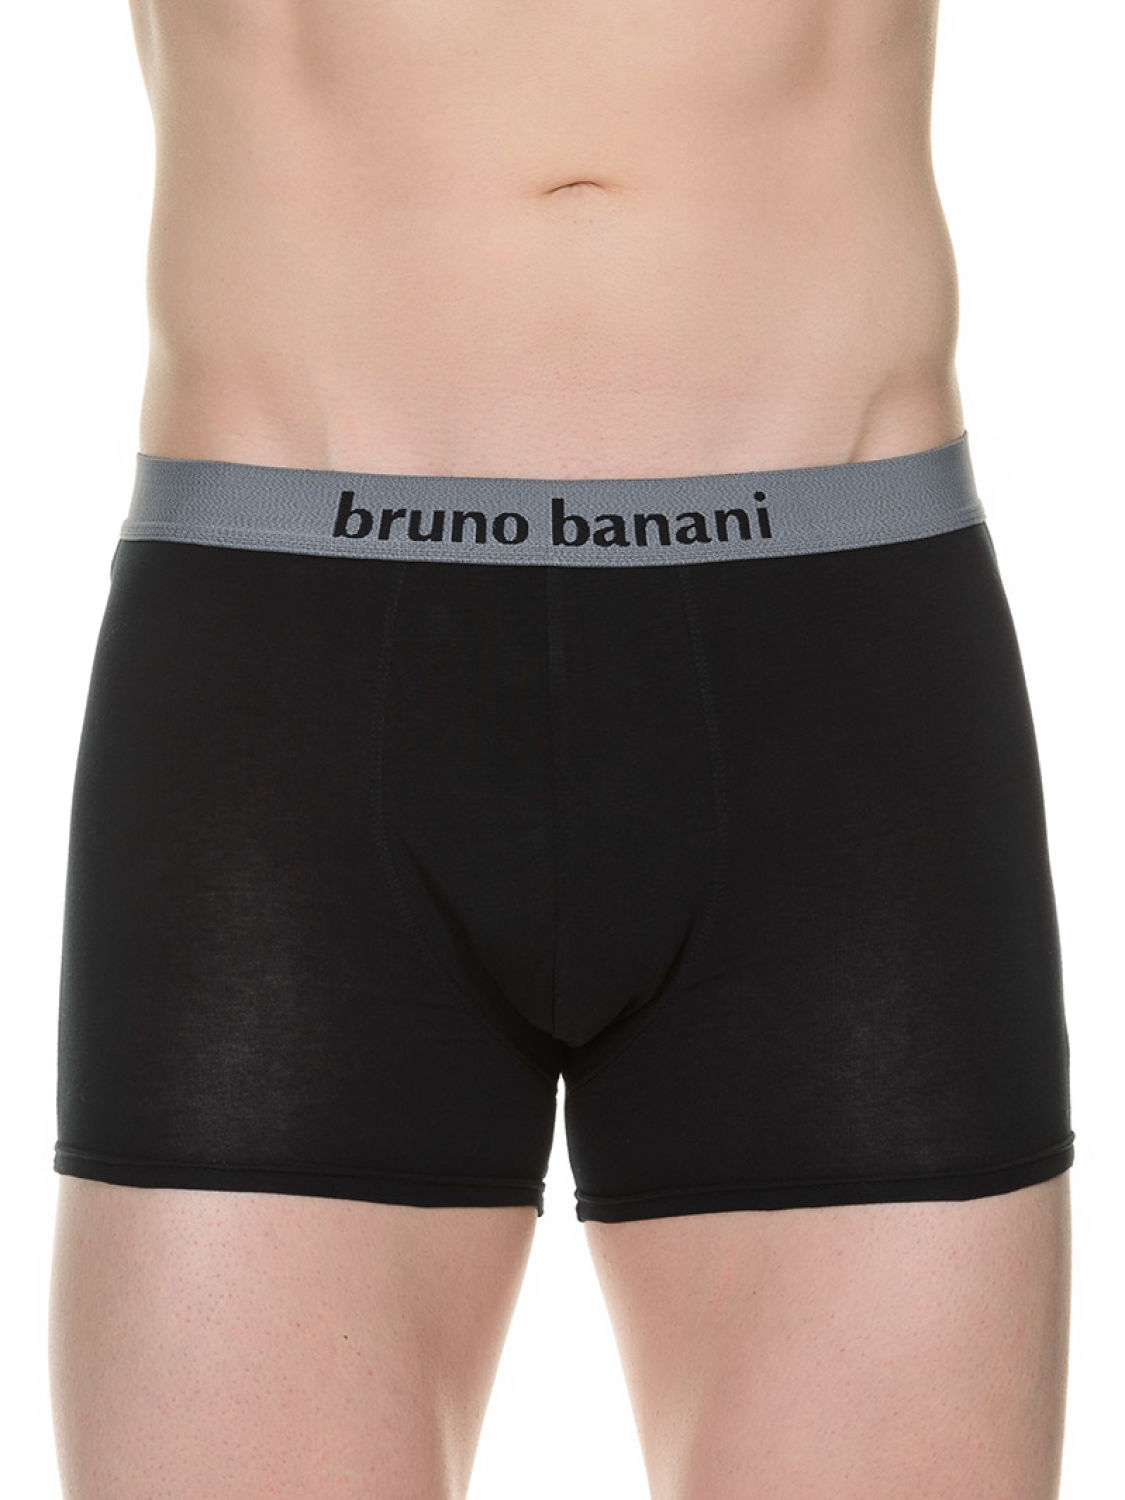 Bruno Banani Flowing 2Pack Short schwarz / grau